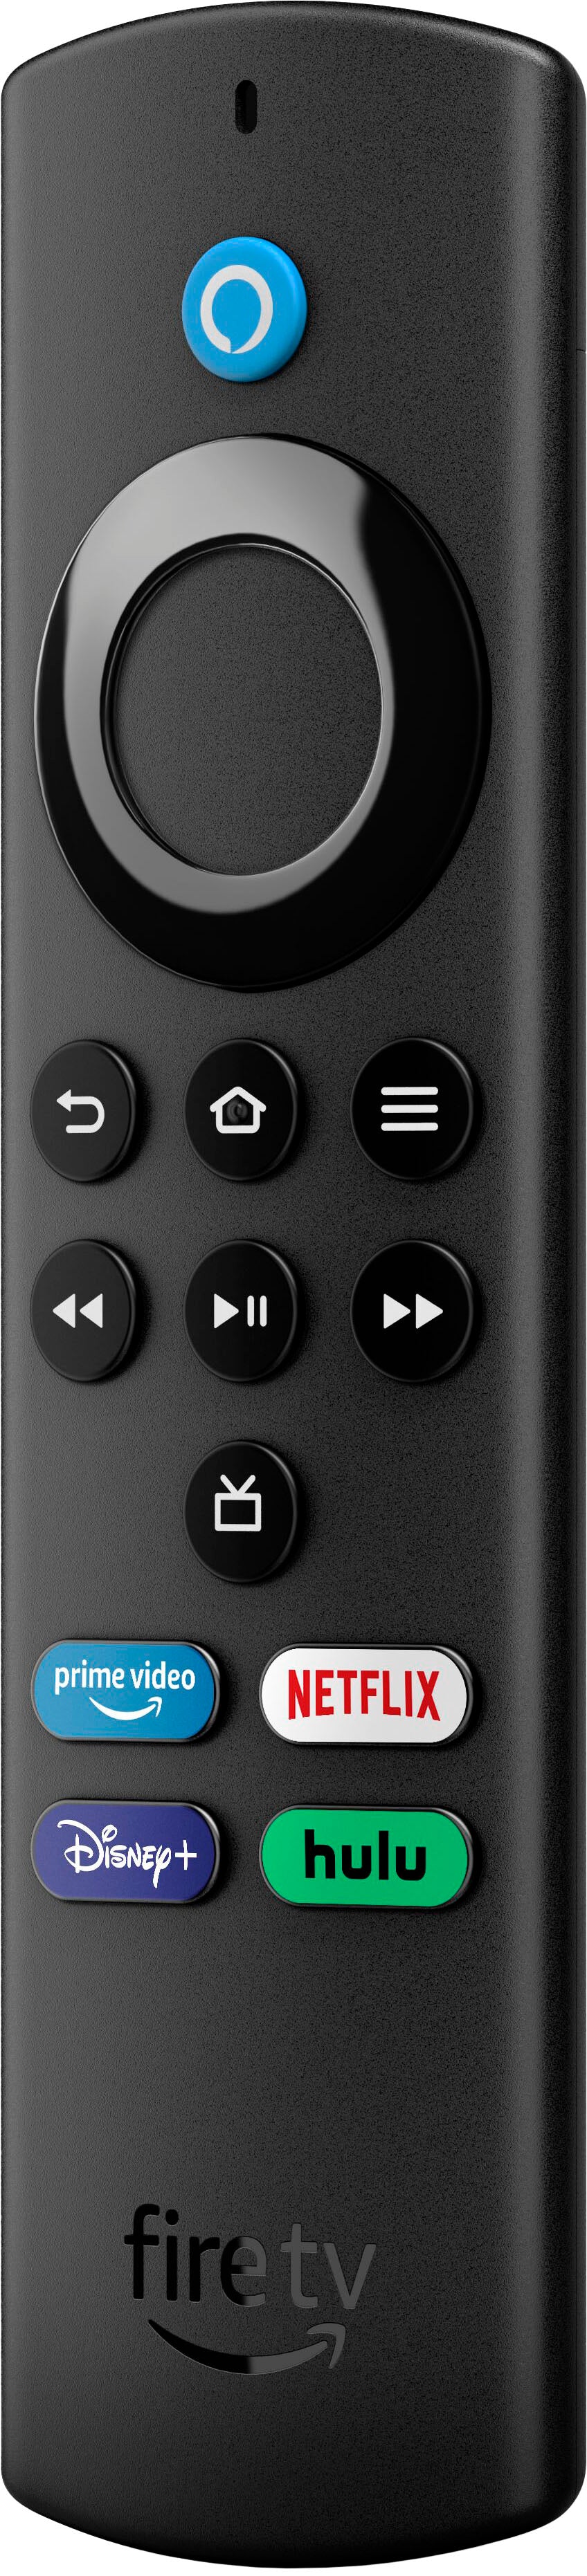 Amazon Fire TV Stick Lite (2021) + Smart Plug + Cat5 Cable + Batteries Bundle